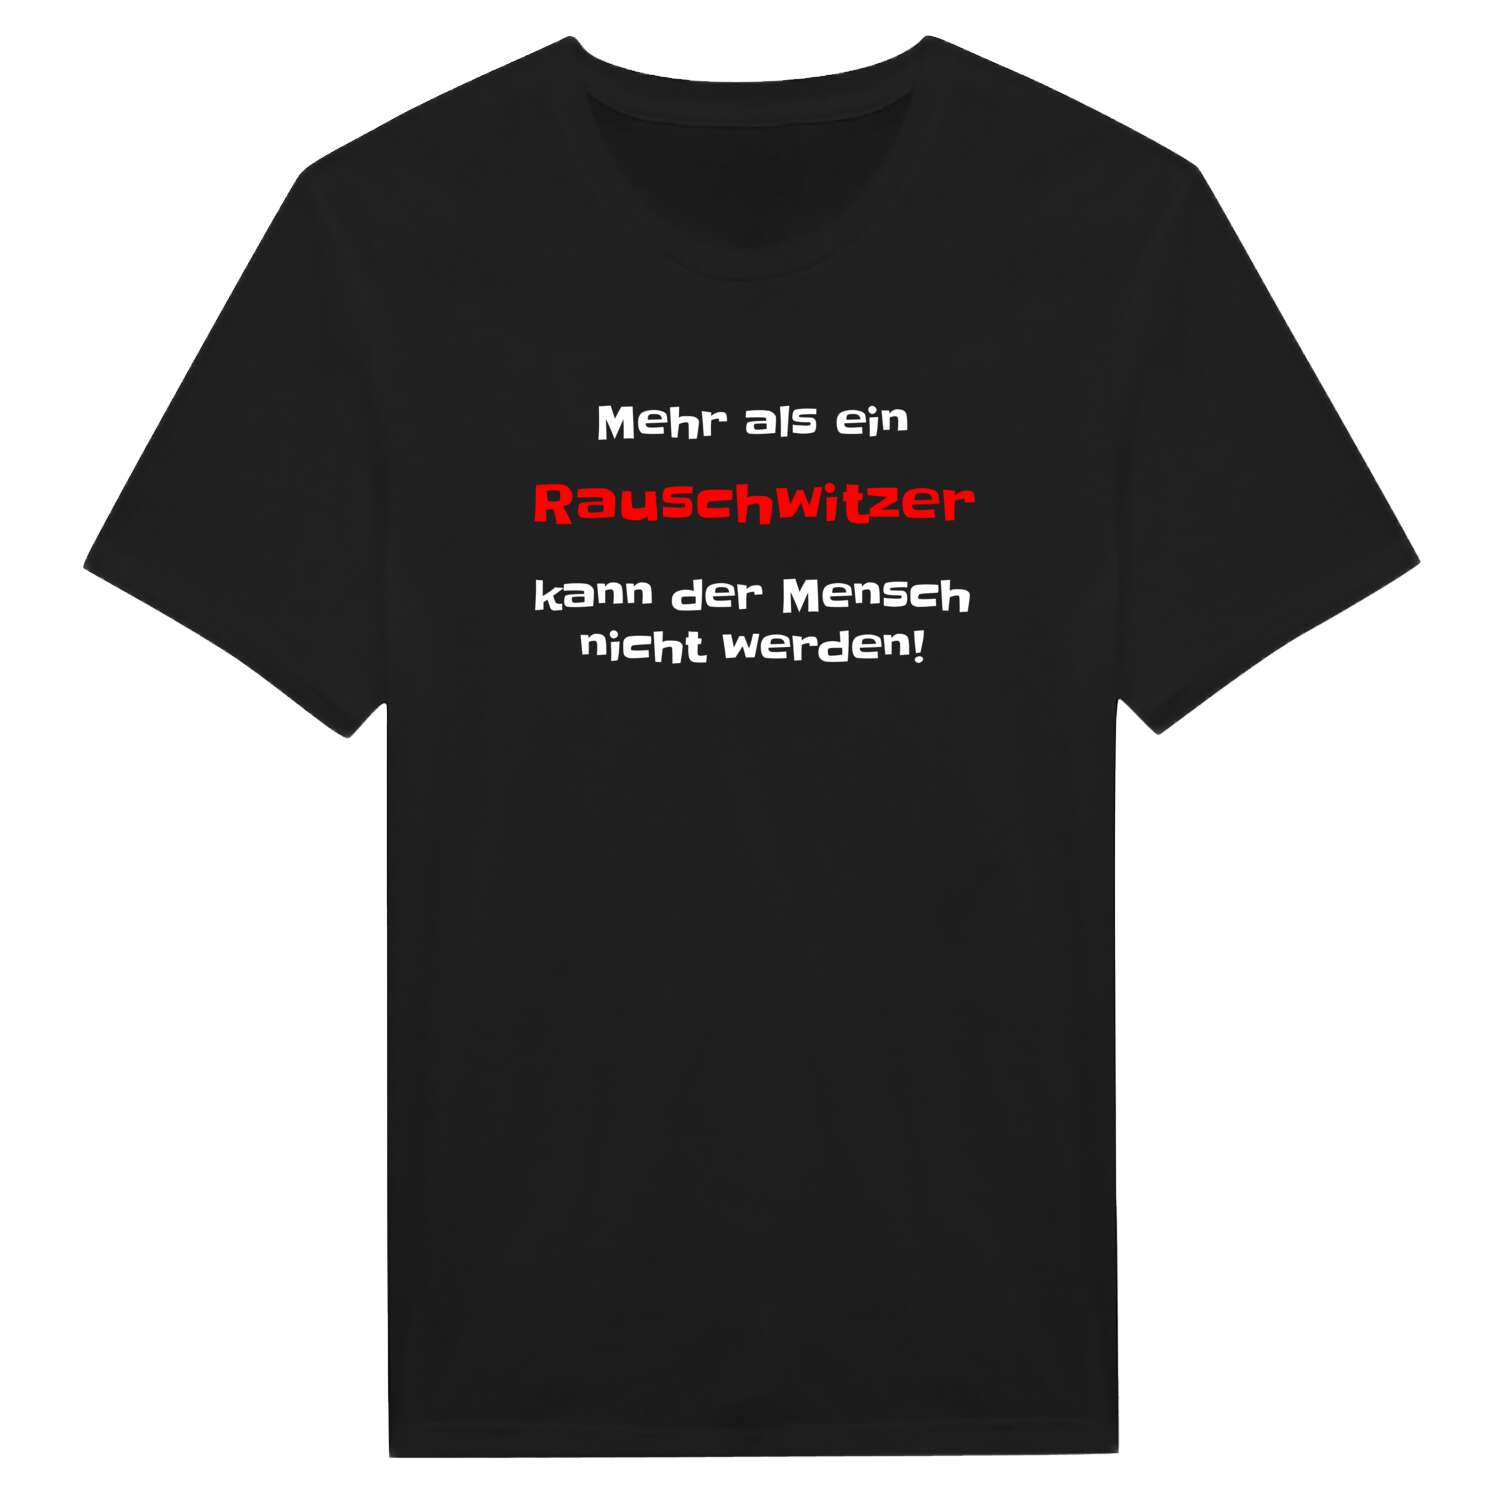 Rauschwitz T-Shirt »Mehr als ein«